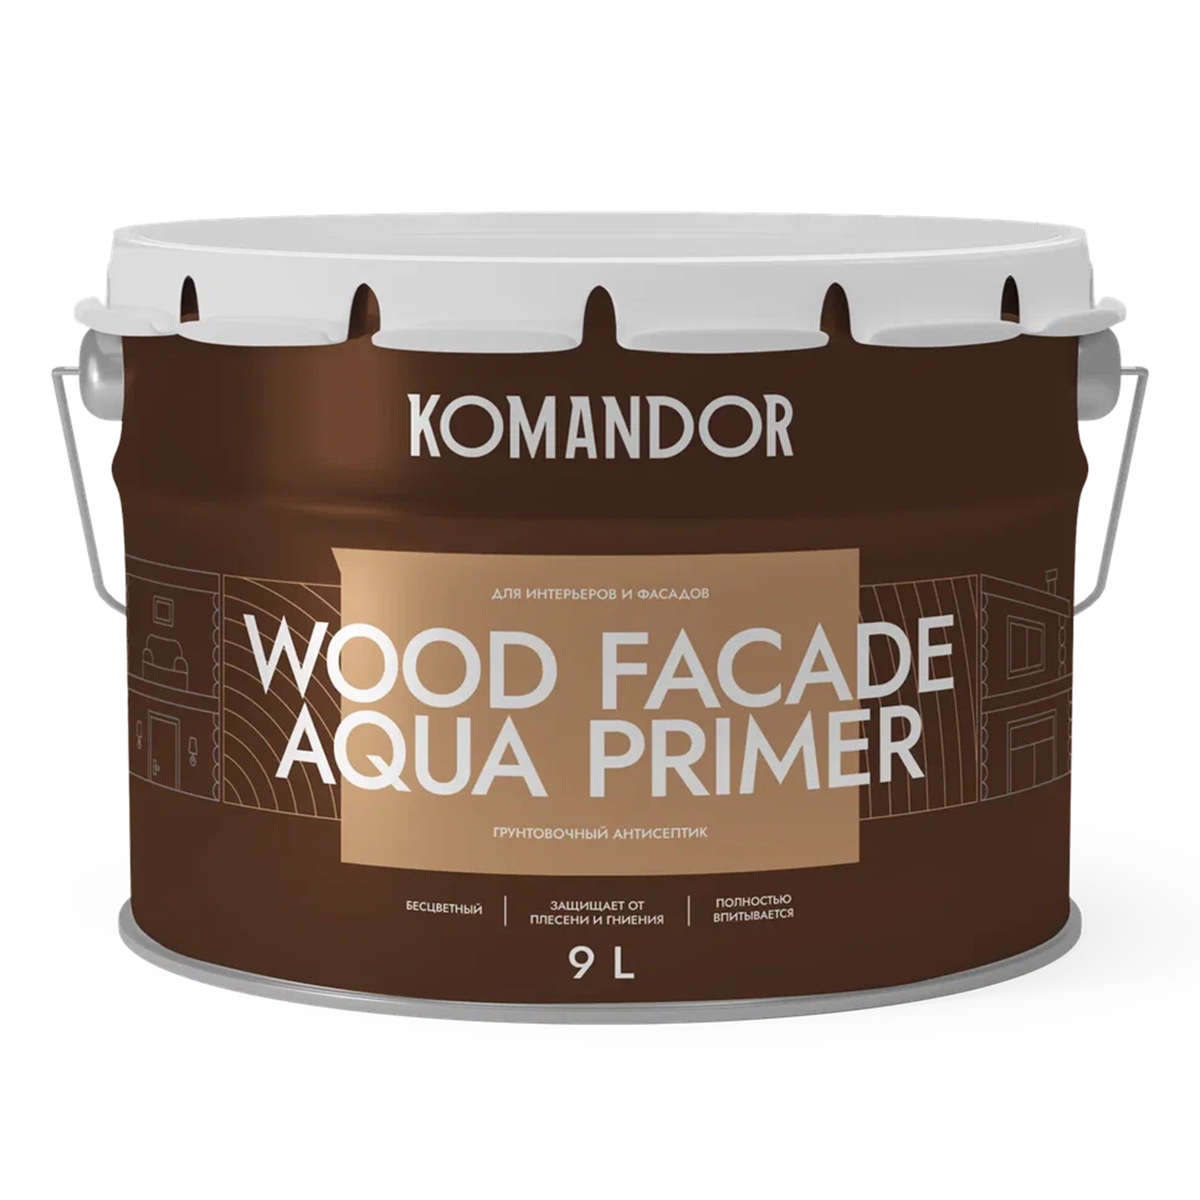 Грунт-антисептик для дерева Komandor Wood Facade Aqua Primer, 9 л нилпа про плант xl нейтральный грунт для аквариумных растений 3 кг